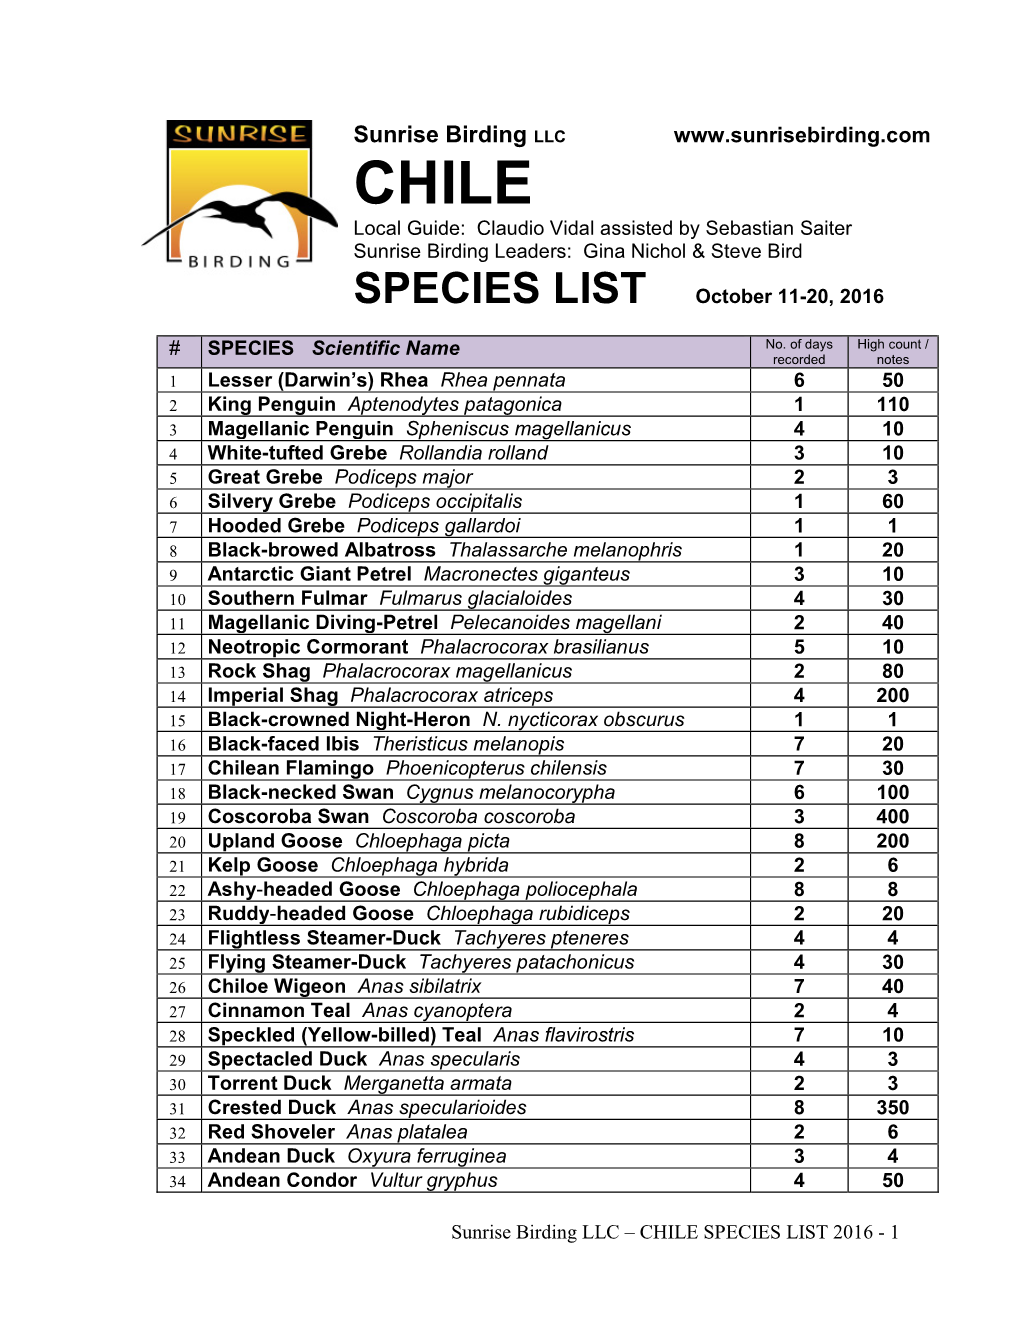 Species List(Pdf)